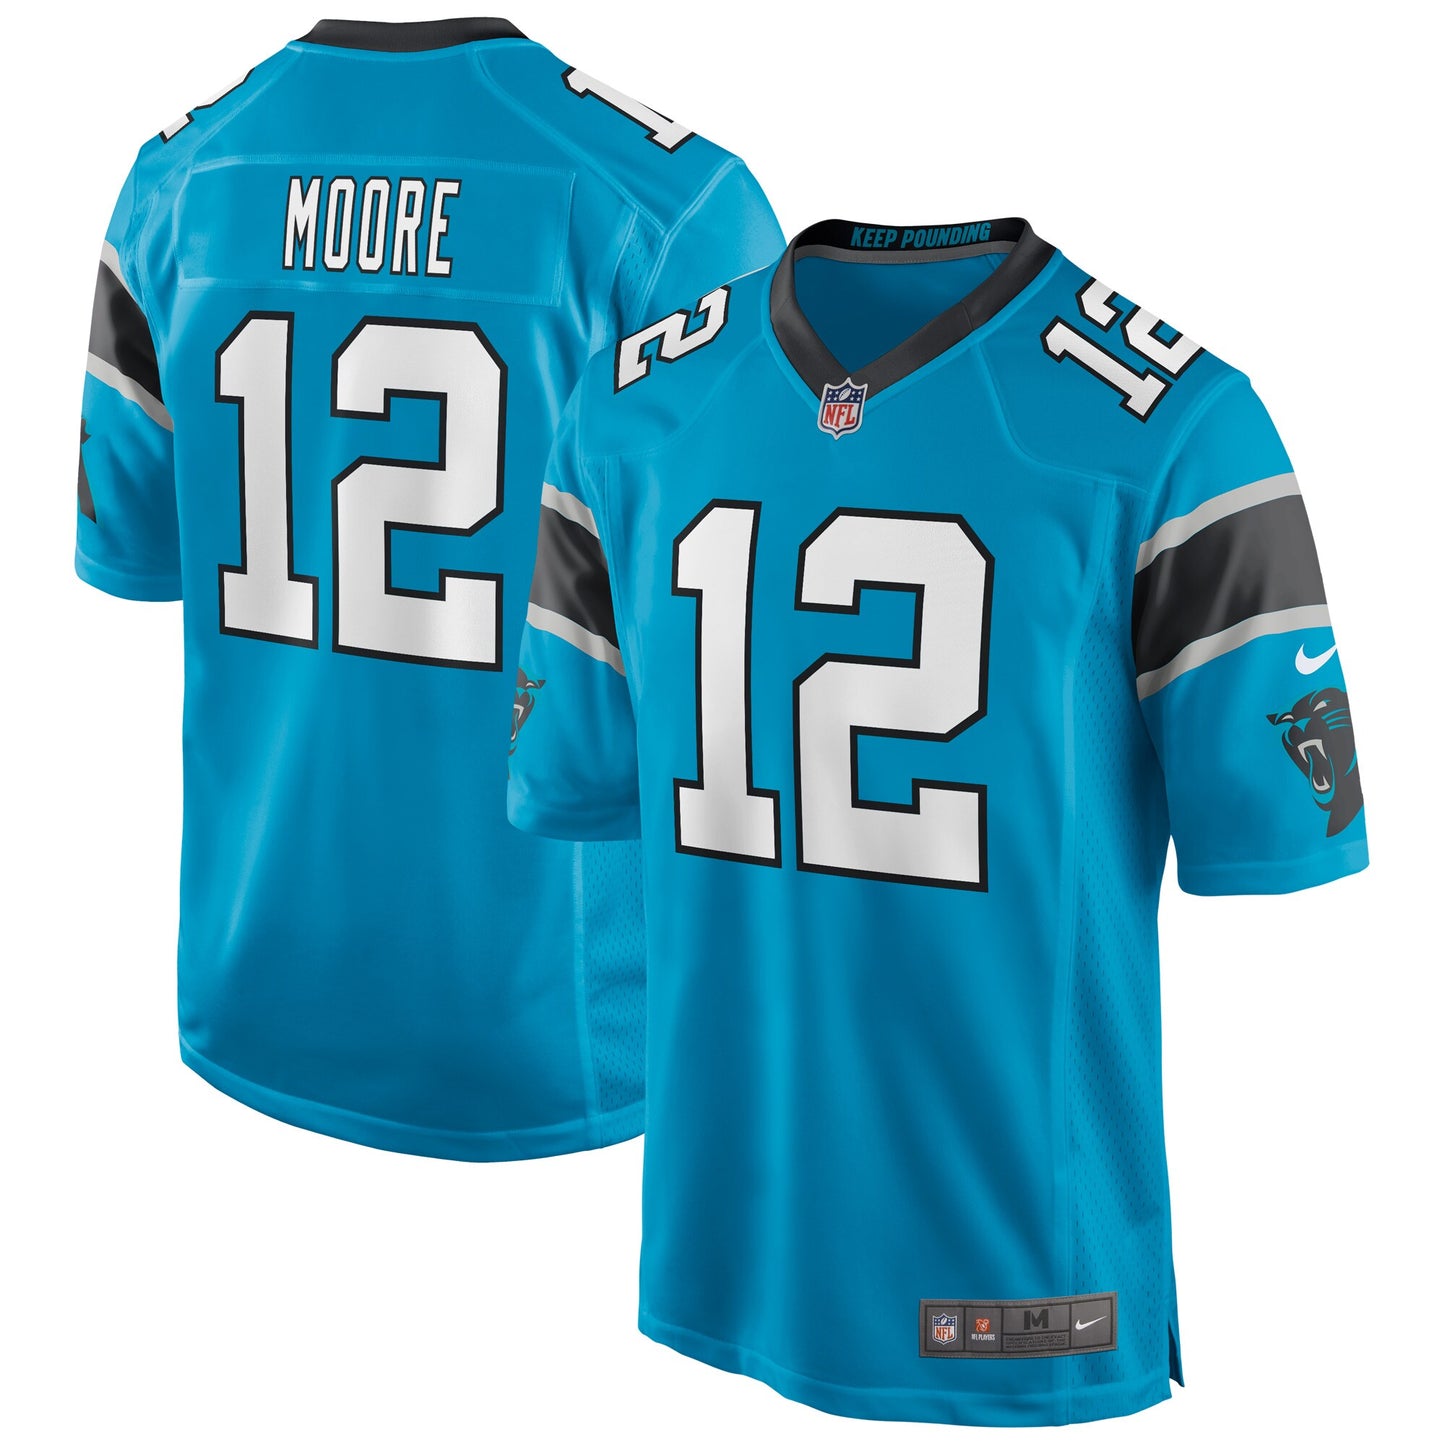 DJ Moore Carolina Panthers Nike Game Player Jersey - Blue